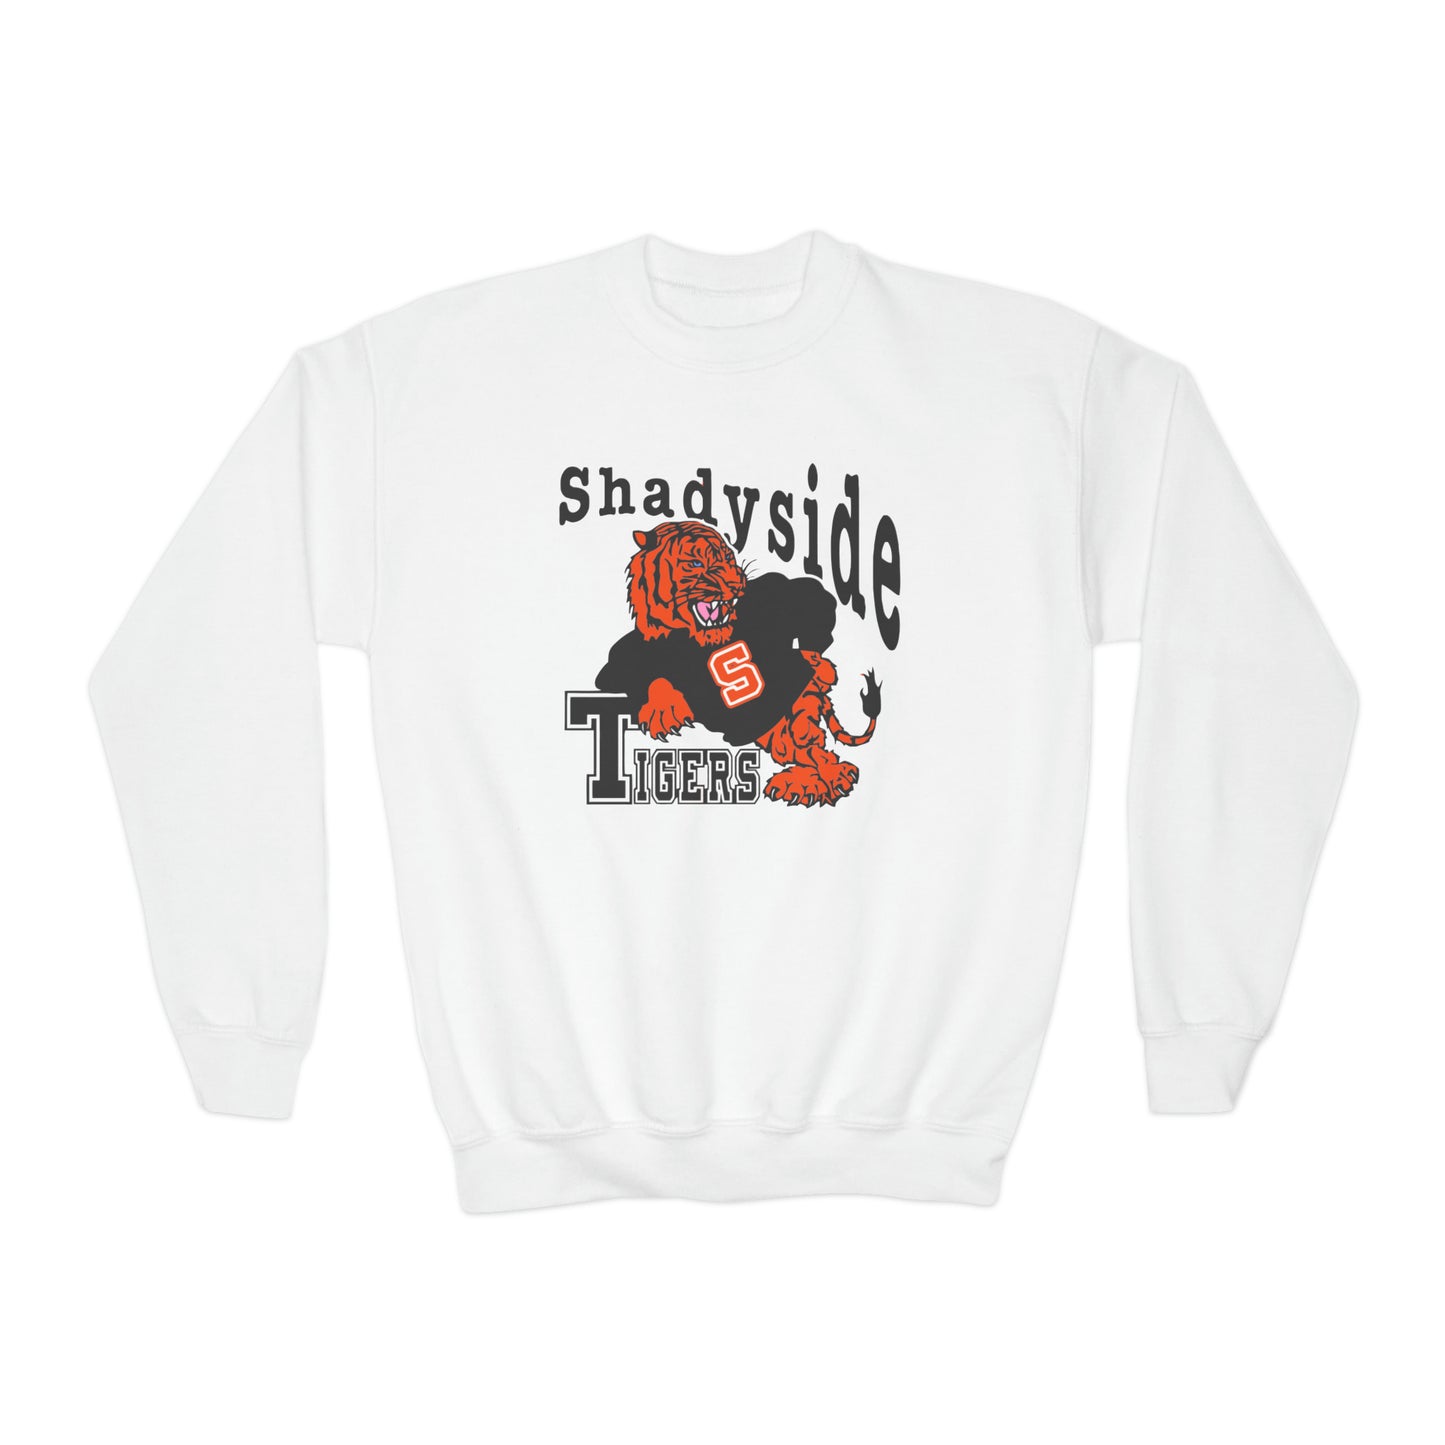 Youth Crewneck Sweatshirt 1